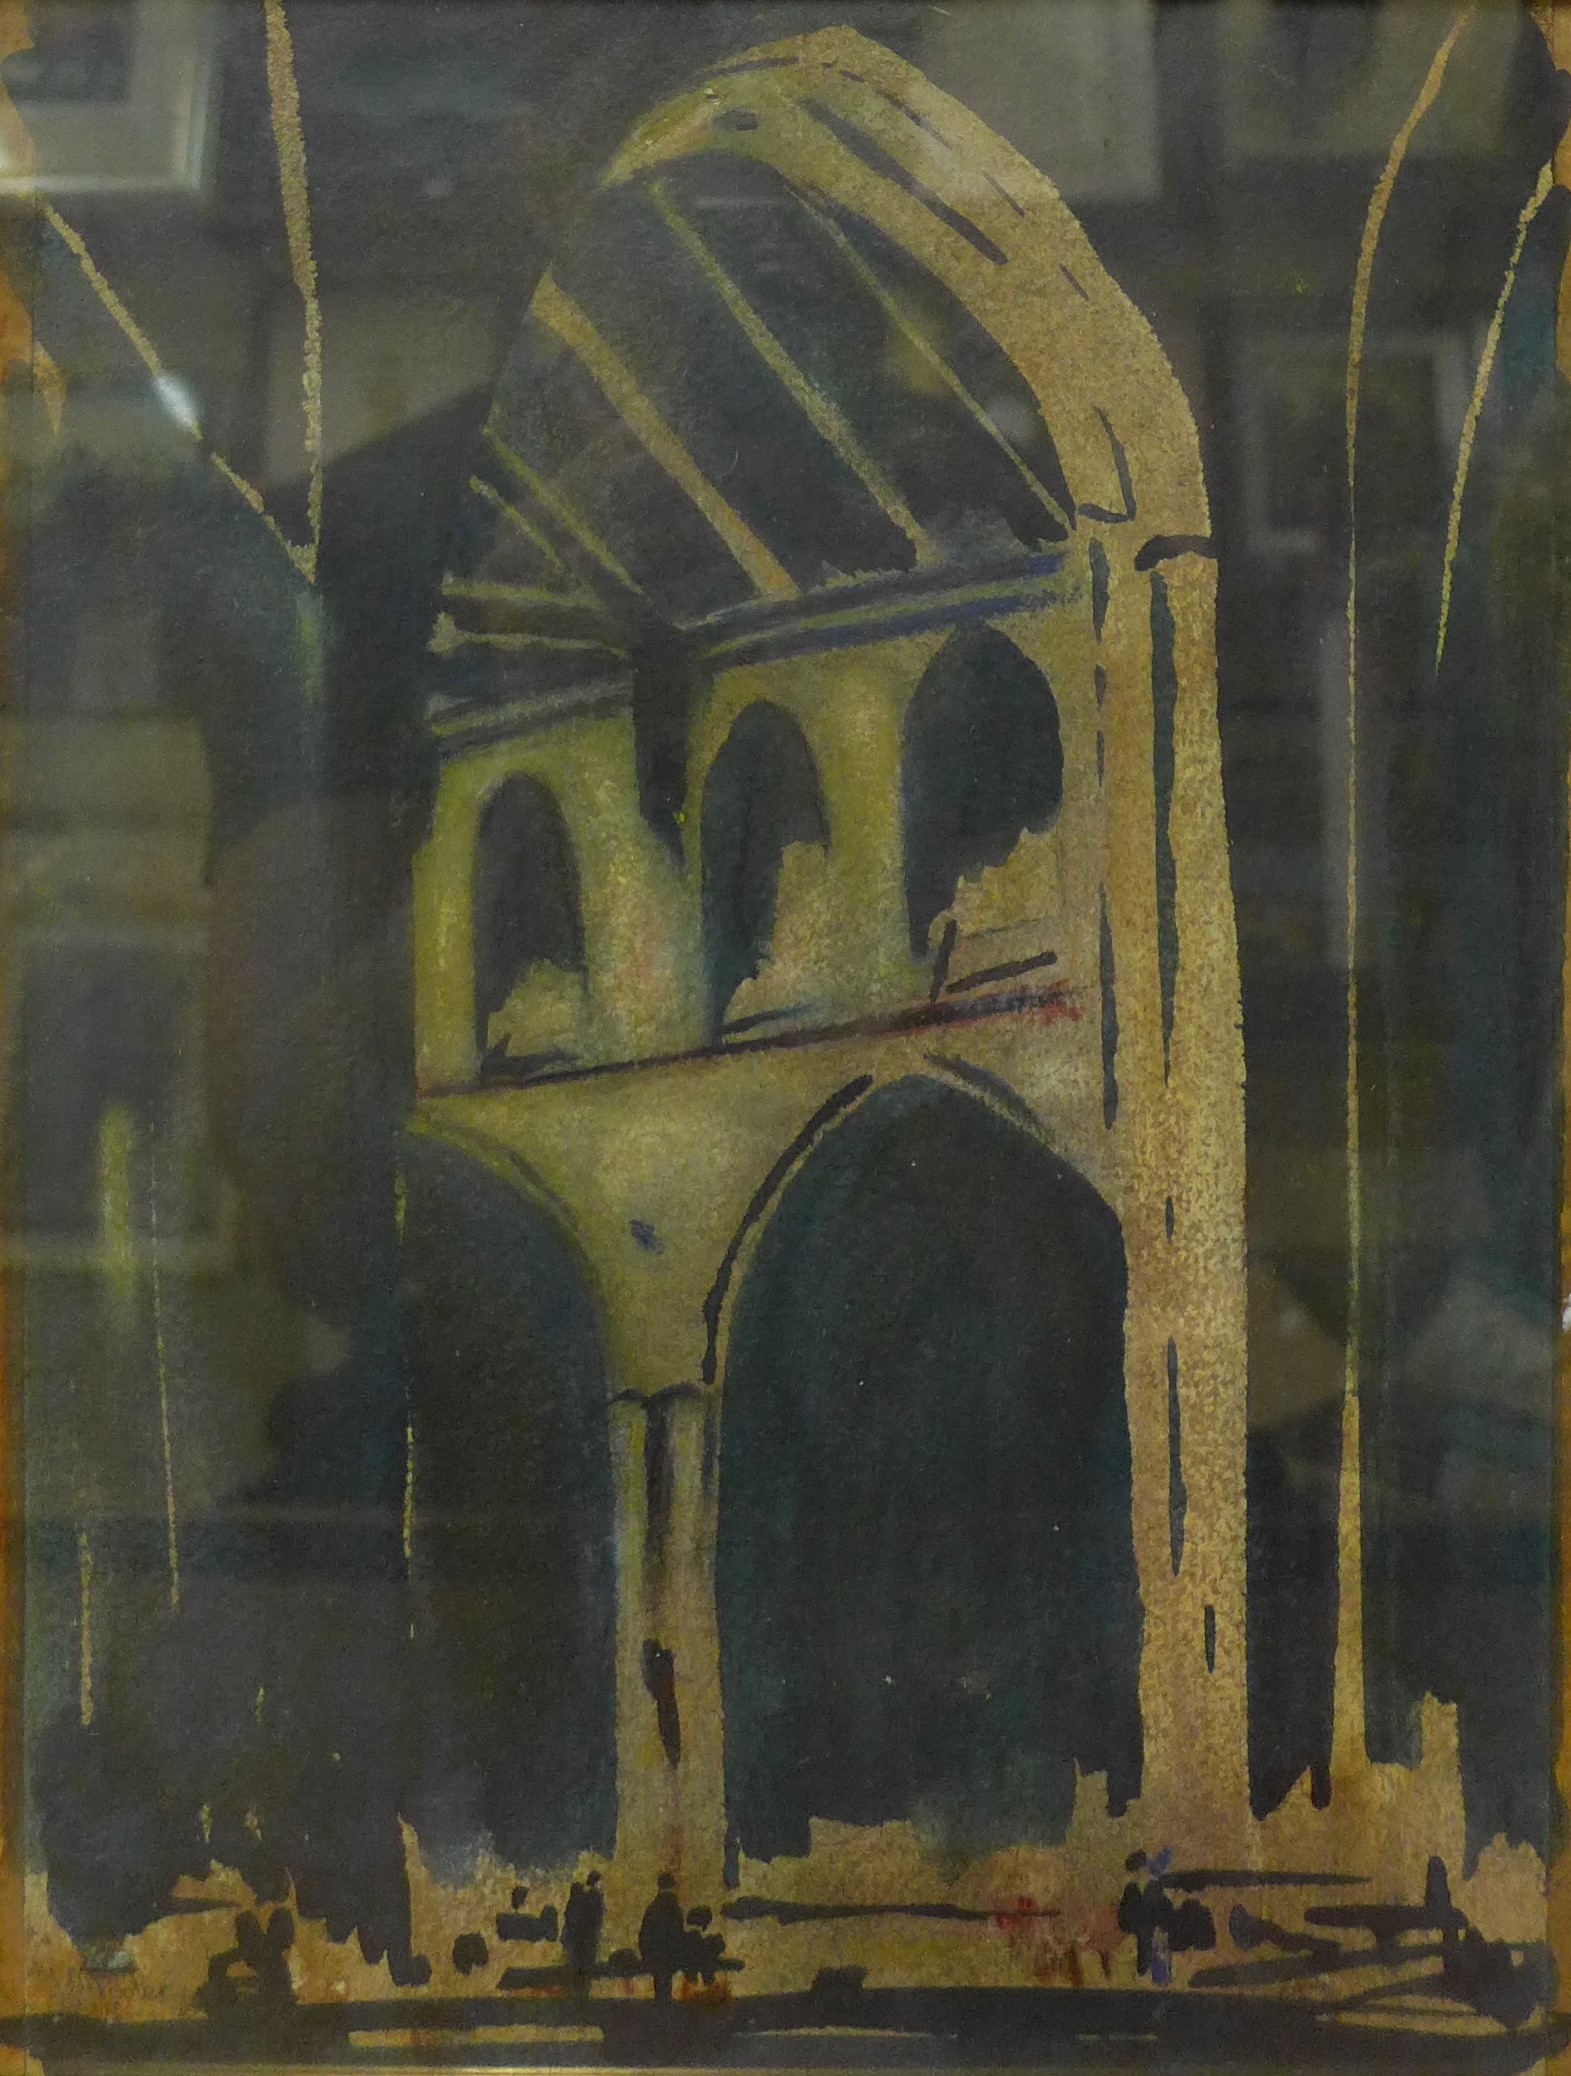 John Pooler, Salle Church, Norfolk, watercolour, framed